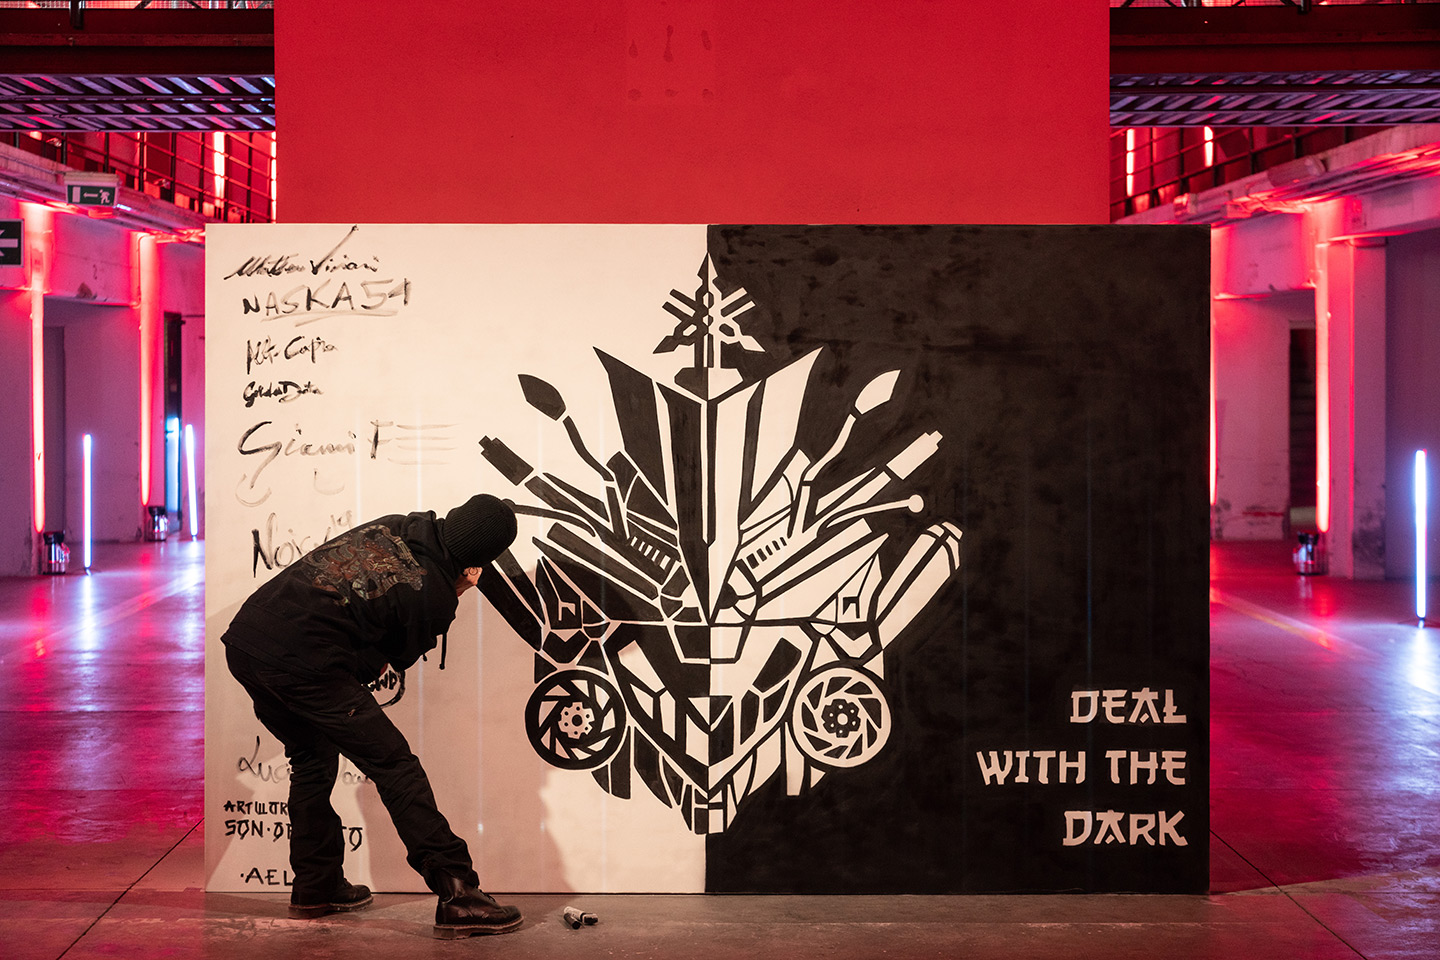 Street Artist che dipinge un murales in bianco e nero, realizzato per yamaha raffigurante lofo e componenti principali delle moto. In basso scrive "deal with the dark"